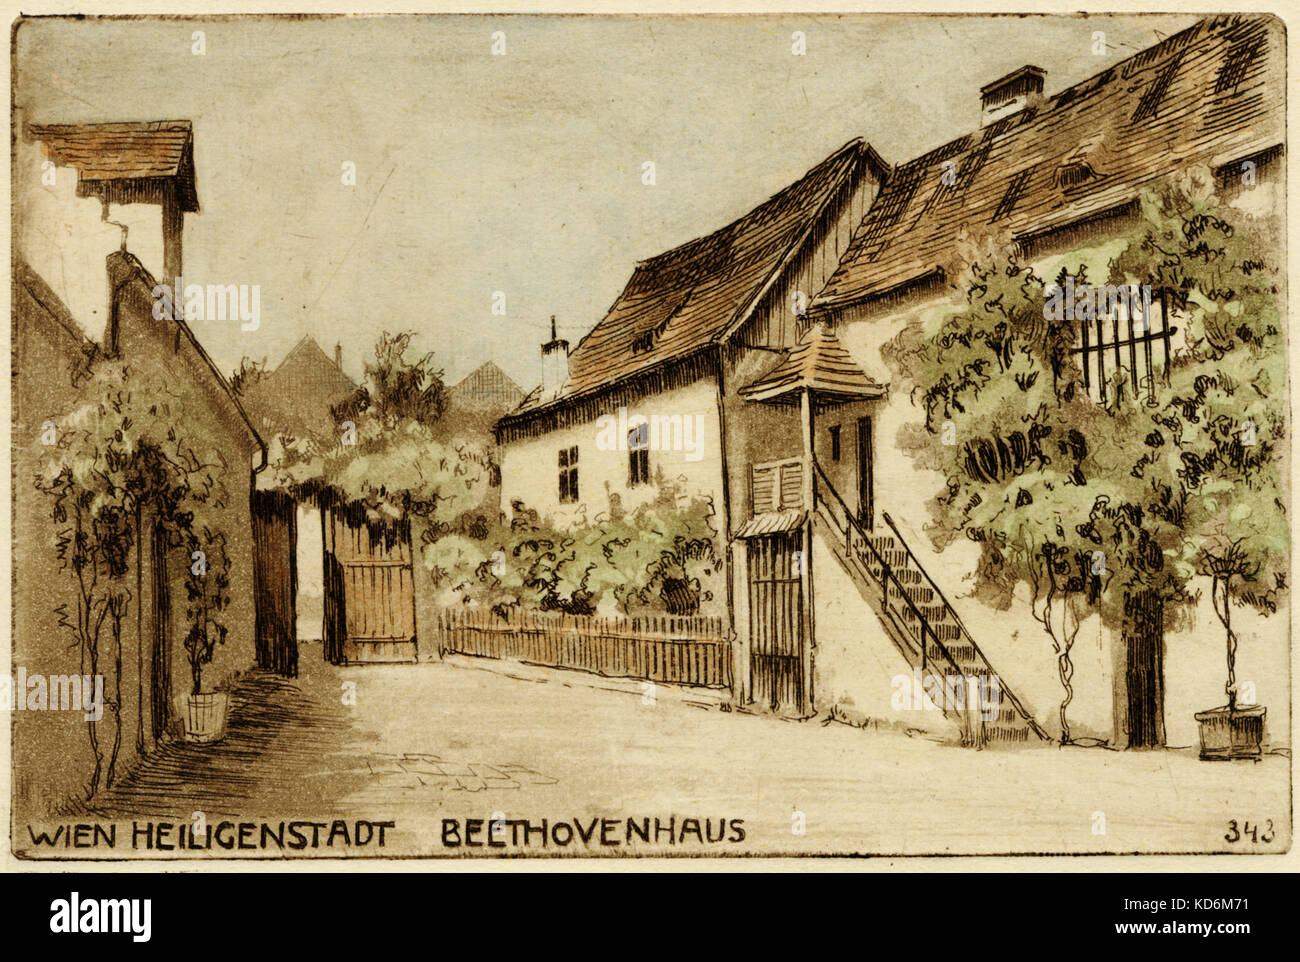 Ludwig van Beethoven 's casa en Heiligenstadt, Viena. Dibujado por L V Pollak. Compositor alemán, el 17 de diciembre de 1770 - 26 de marzo de 1827. Su retiro de verano en 1802, 1807, 1808, 1817. En 1802 escribió una conmovedora carta al comienzo de su sordera denominada Heiligenstadt testamento. Tarjeta postal Foto de stock